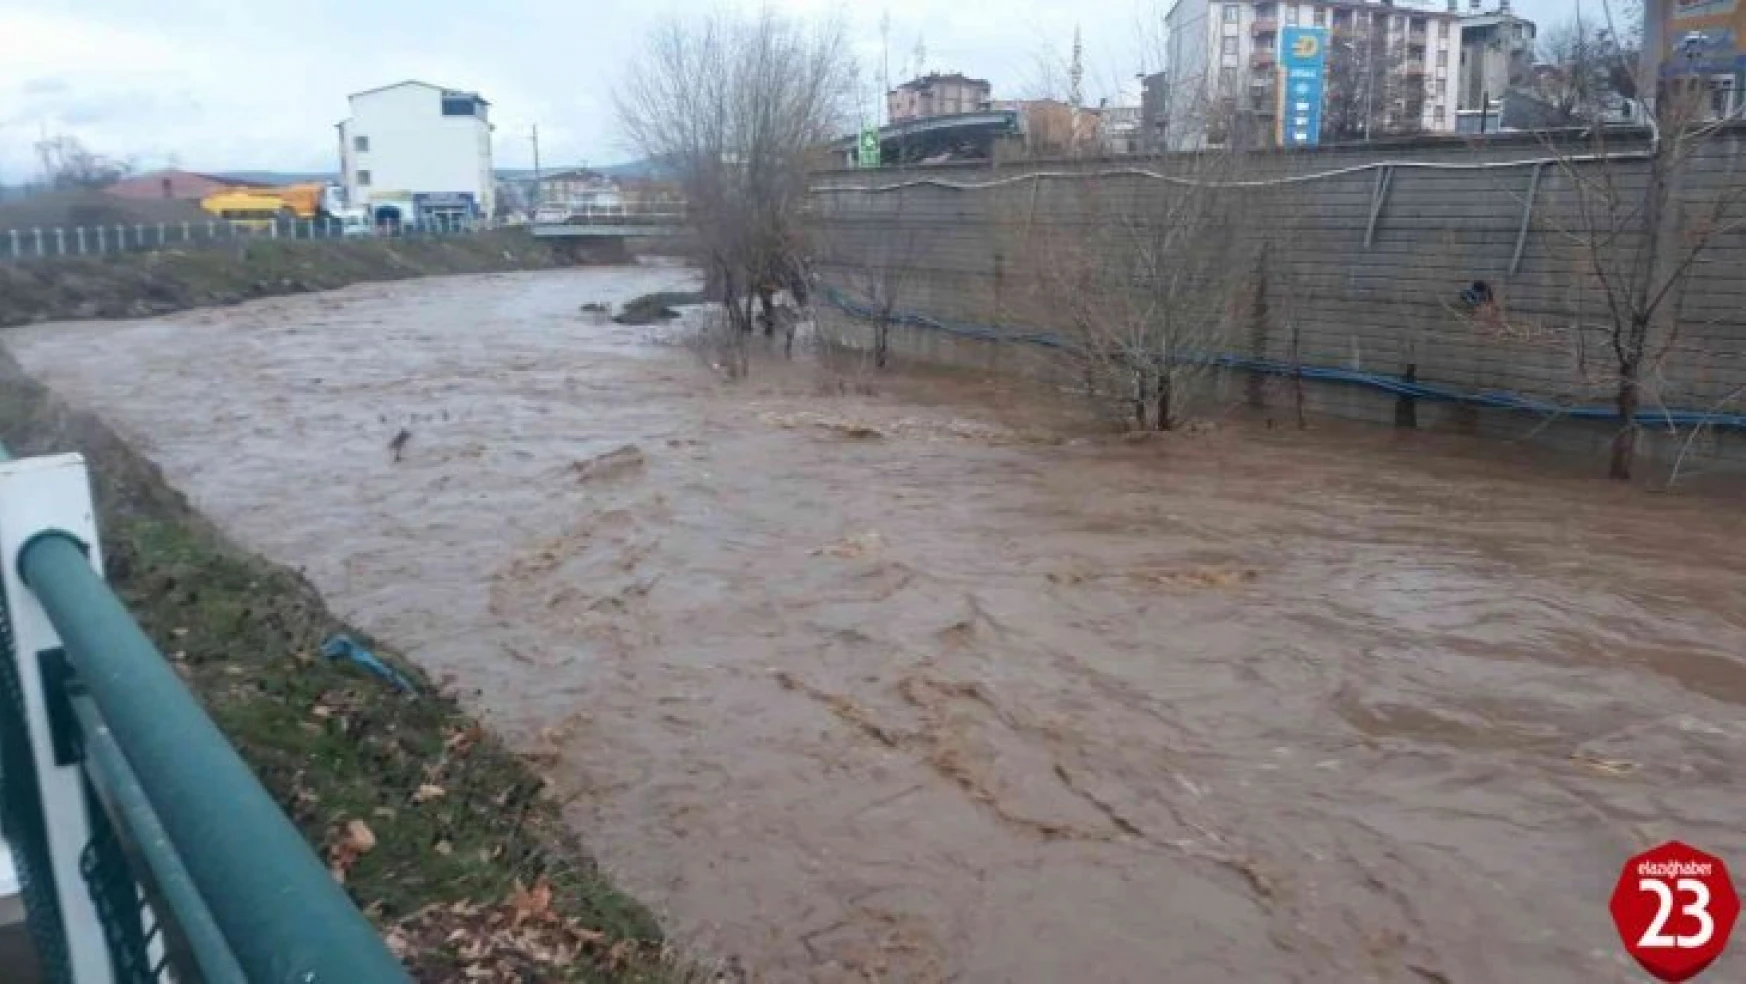 Elazığ'da yoğun yağışların ardından dereler taştı, vatandaşlara anonsla sel uyarısı yapıldı